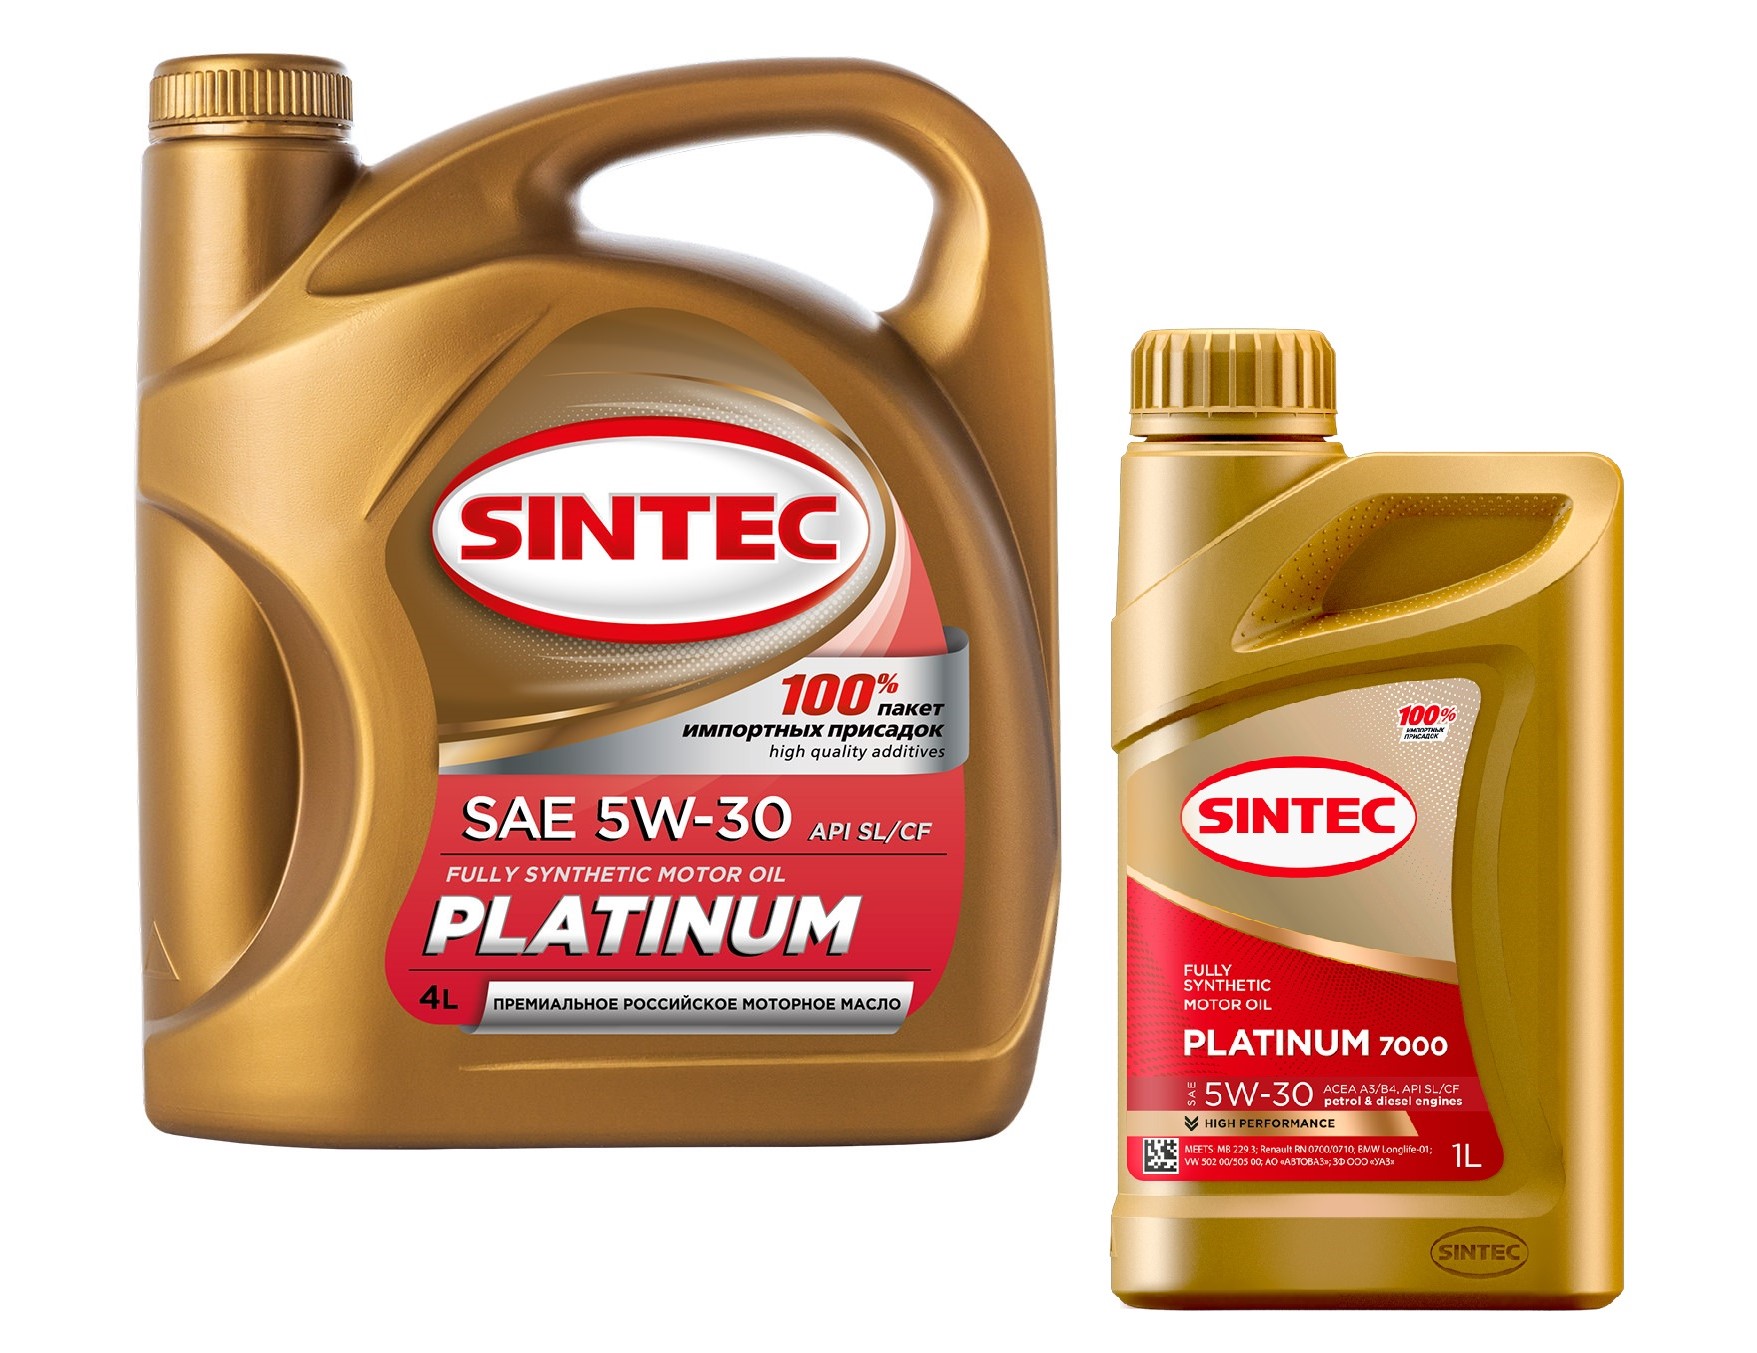 Sintec масло моторное Platinum 7000 SAE 5w-30 API SL/CF 4л. Sintec Platinum 5w-30. Sintec Platinum 5w-40. Масло Синтек платинум 7000.